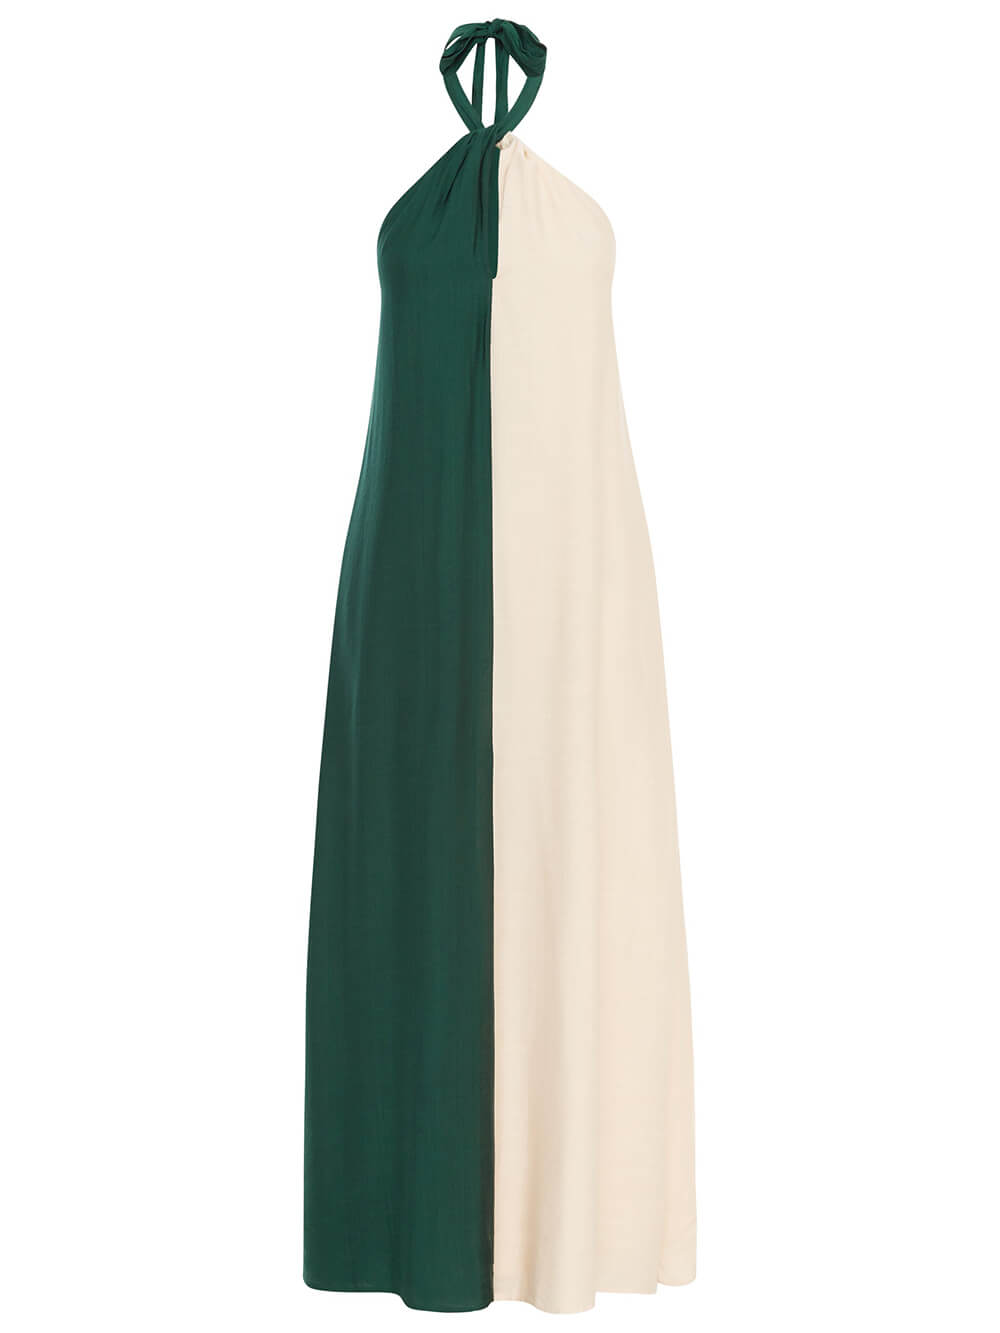 Wisząca sukienka maxi w kontrastowym kolorze z dekoltem w kształcie litery A i kieszeniami typu halter